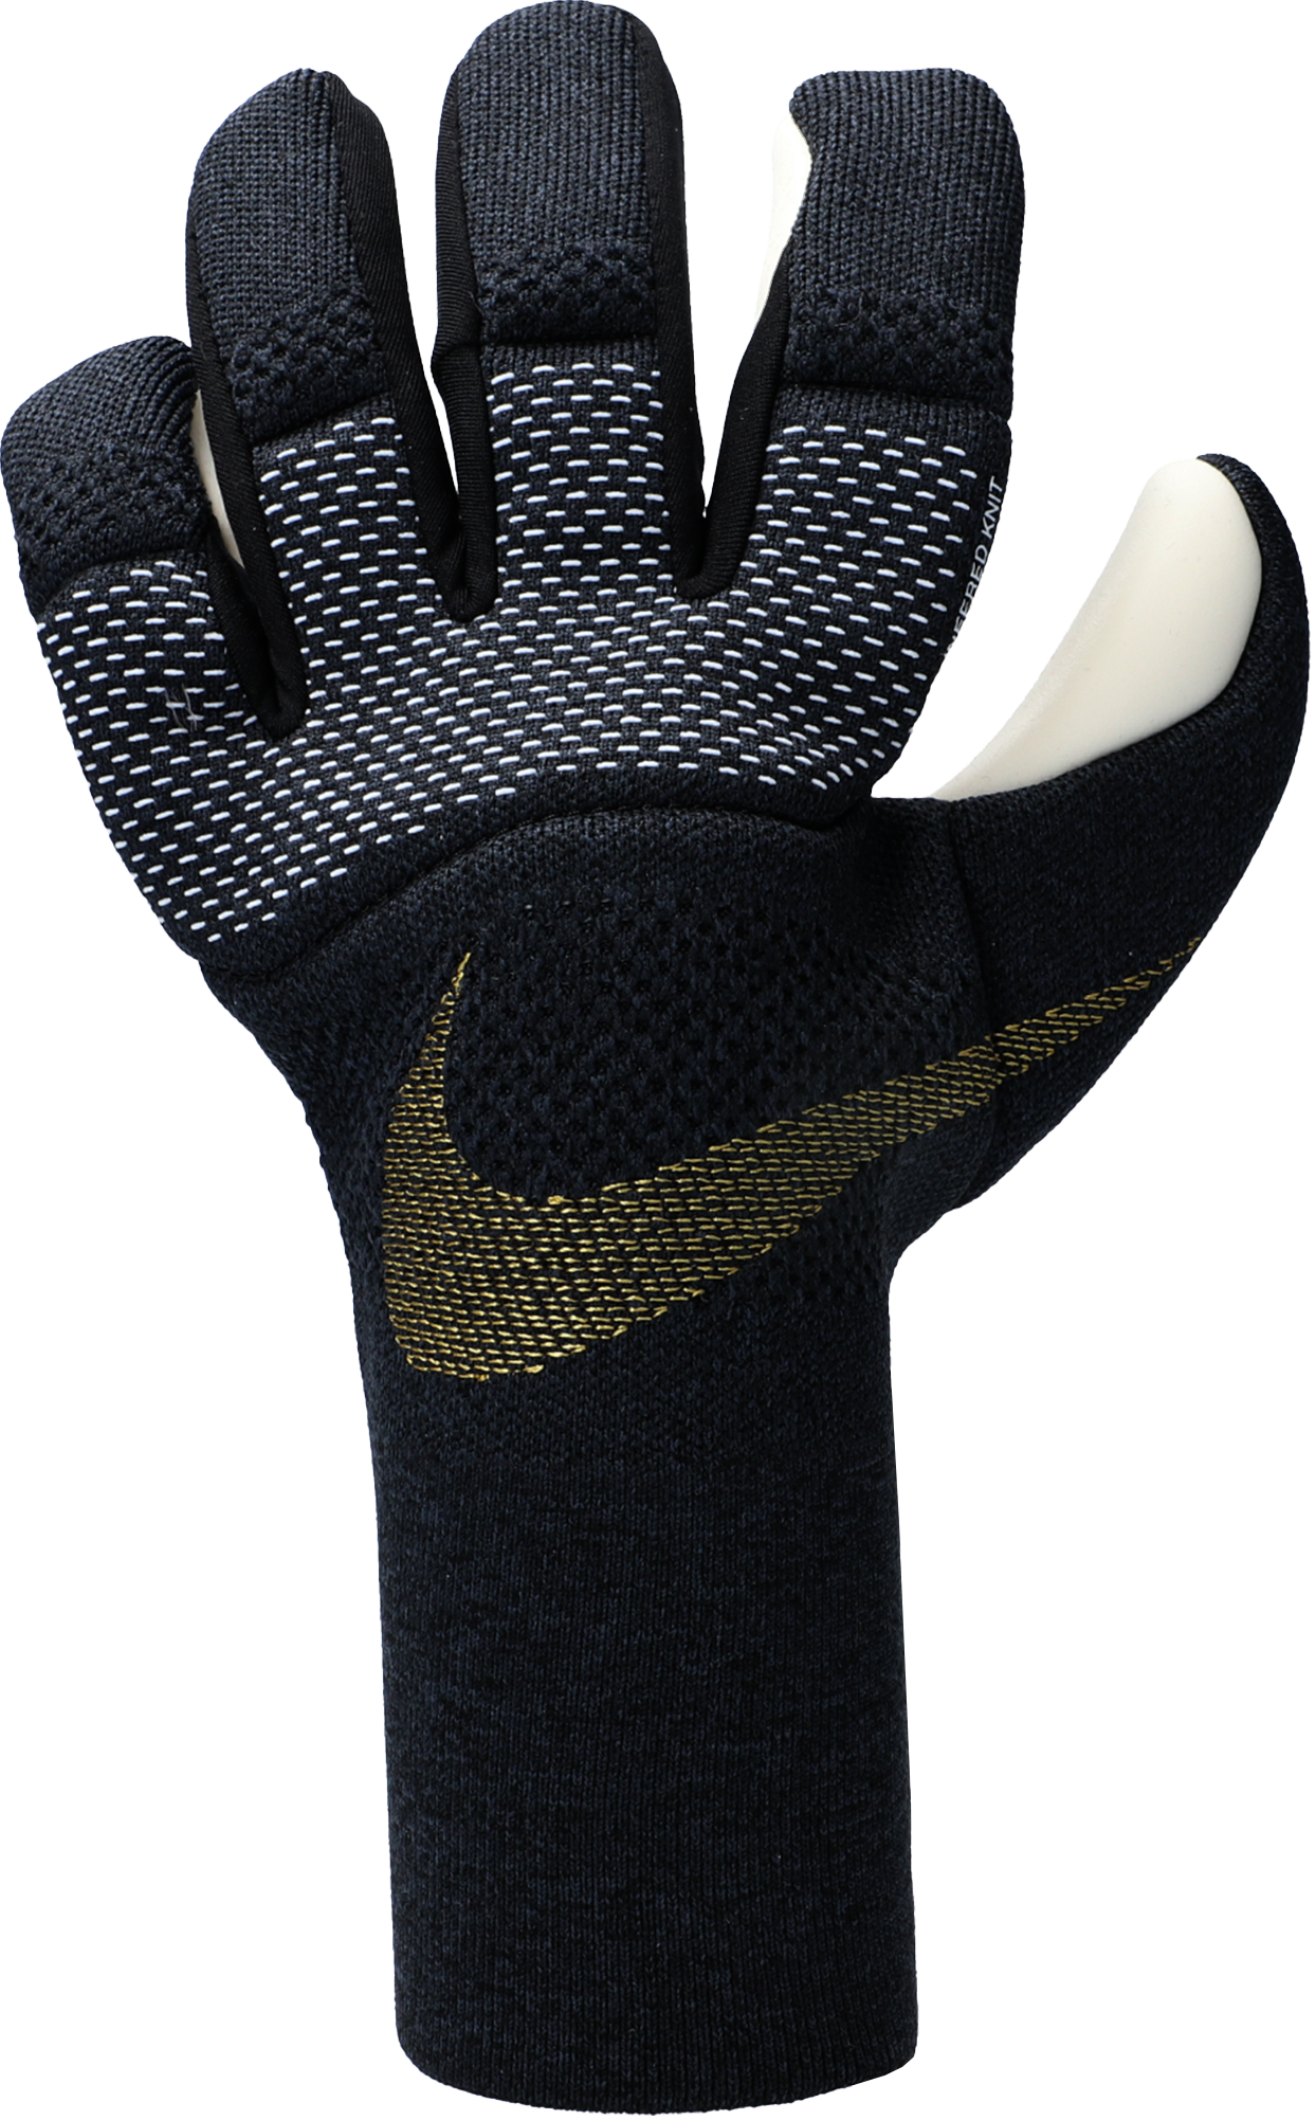 Torwarthandschuhe Nike Vapor Dynamic Fit Promo Goalkeeper Gloves